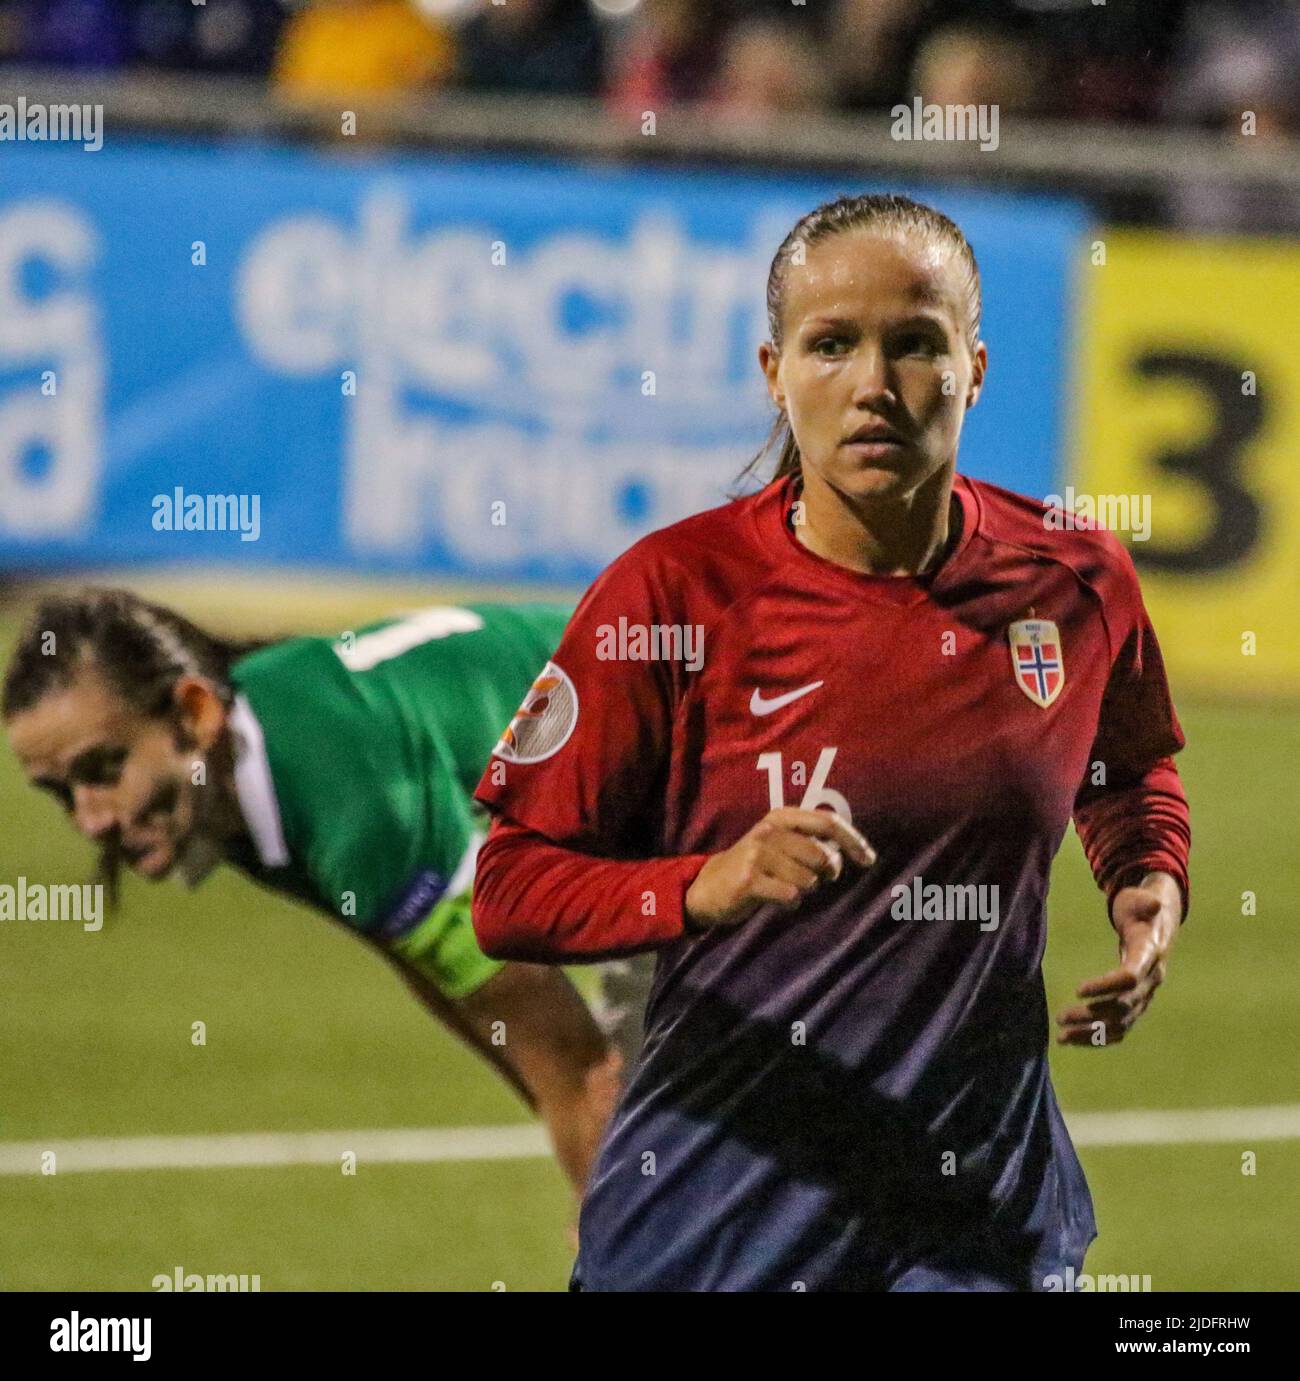 Campeonato Europeo Femenino de la UEFA 2021. 30 de agosto de 2019. Irlanda del Norte 0 Noruega 6 en Seaview, Belfast. Noruega Femenina Internacional jugador de fútbol Guro Reiten Noruega (16). Foto de stock